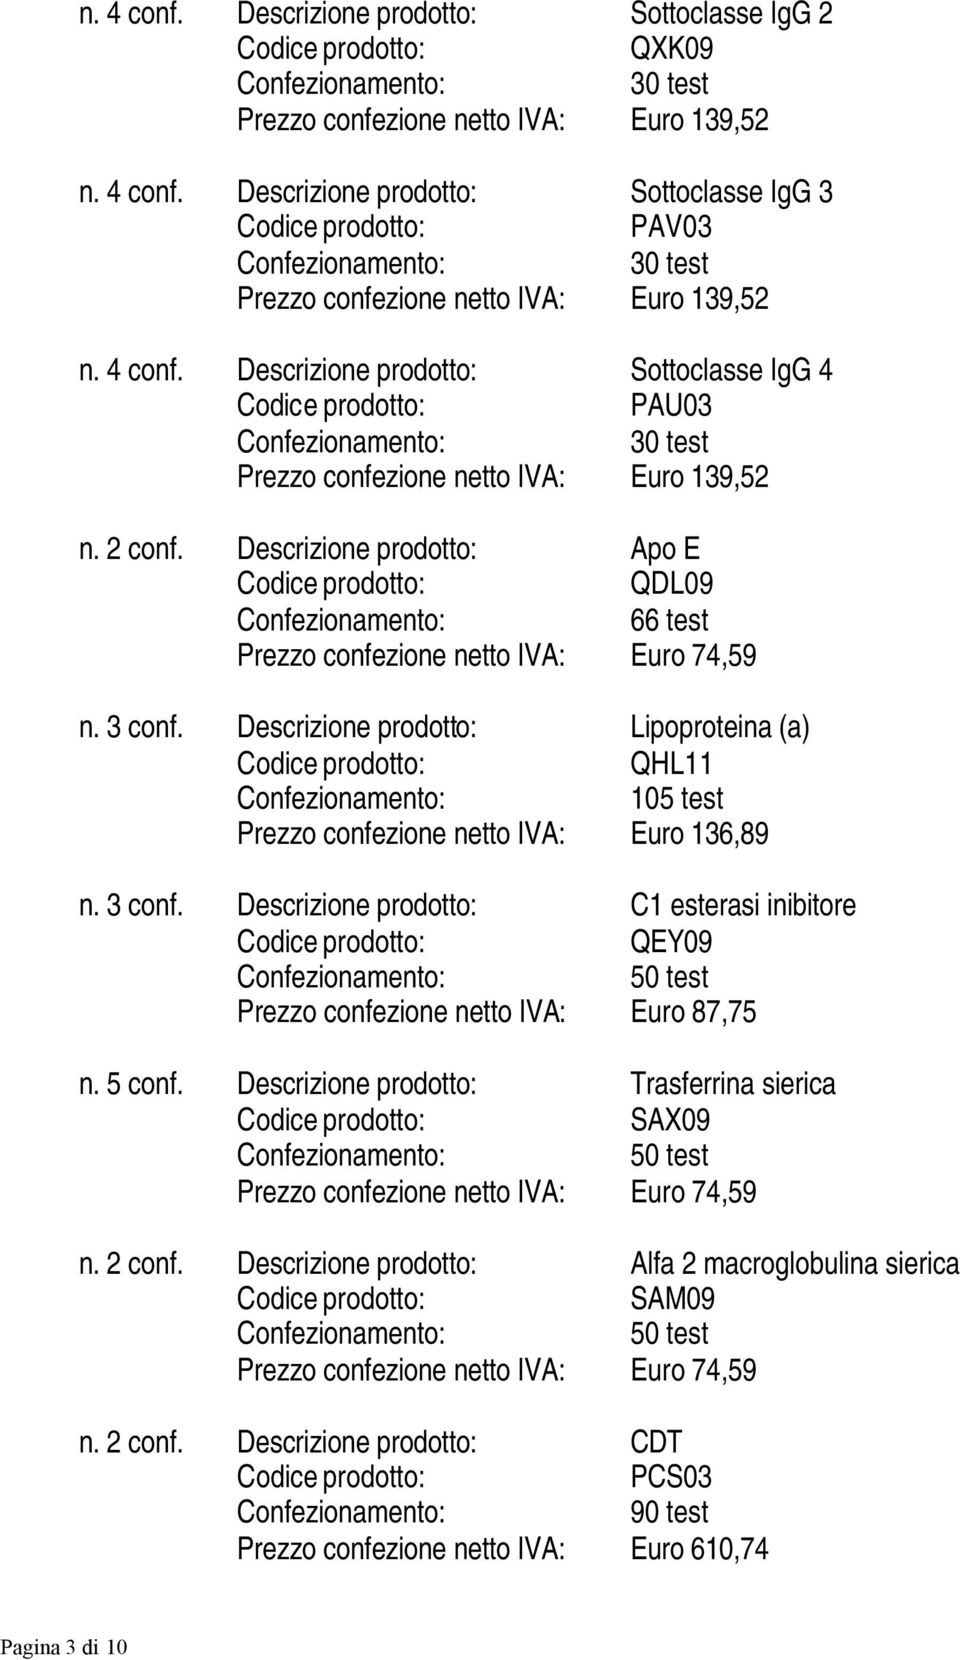 3 conf. Descrizione prodotto: Lipoproteina (a) QHL11 105 test Prezzo confezione netto IVA: Euro 136,89 n. 3 conf.